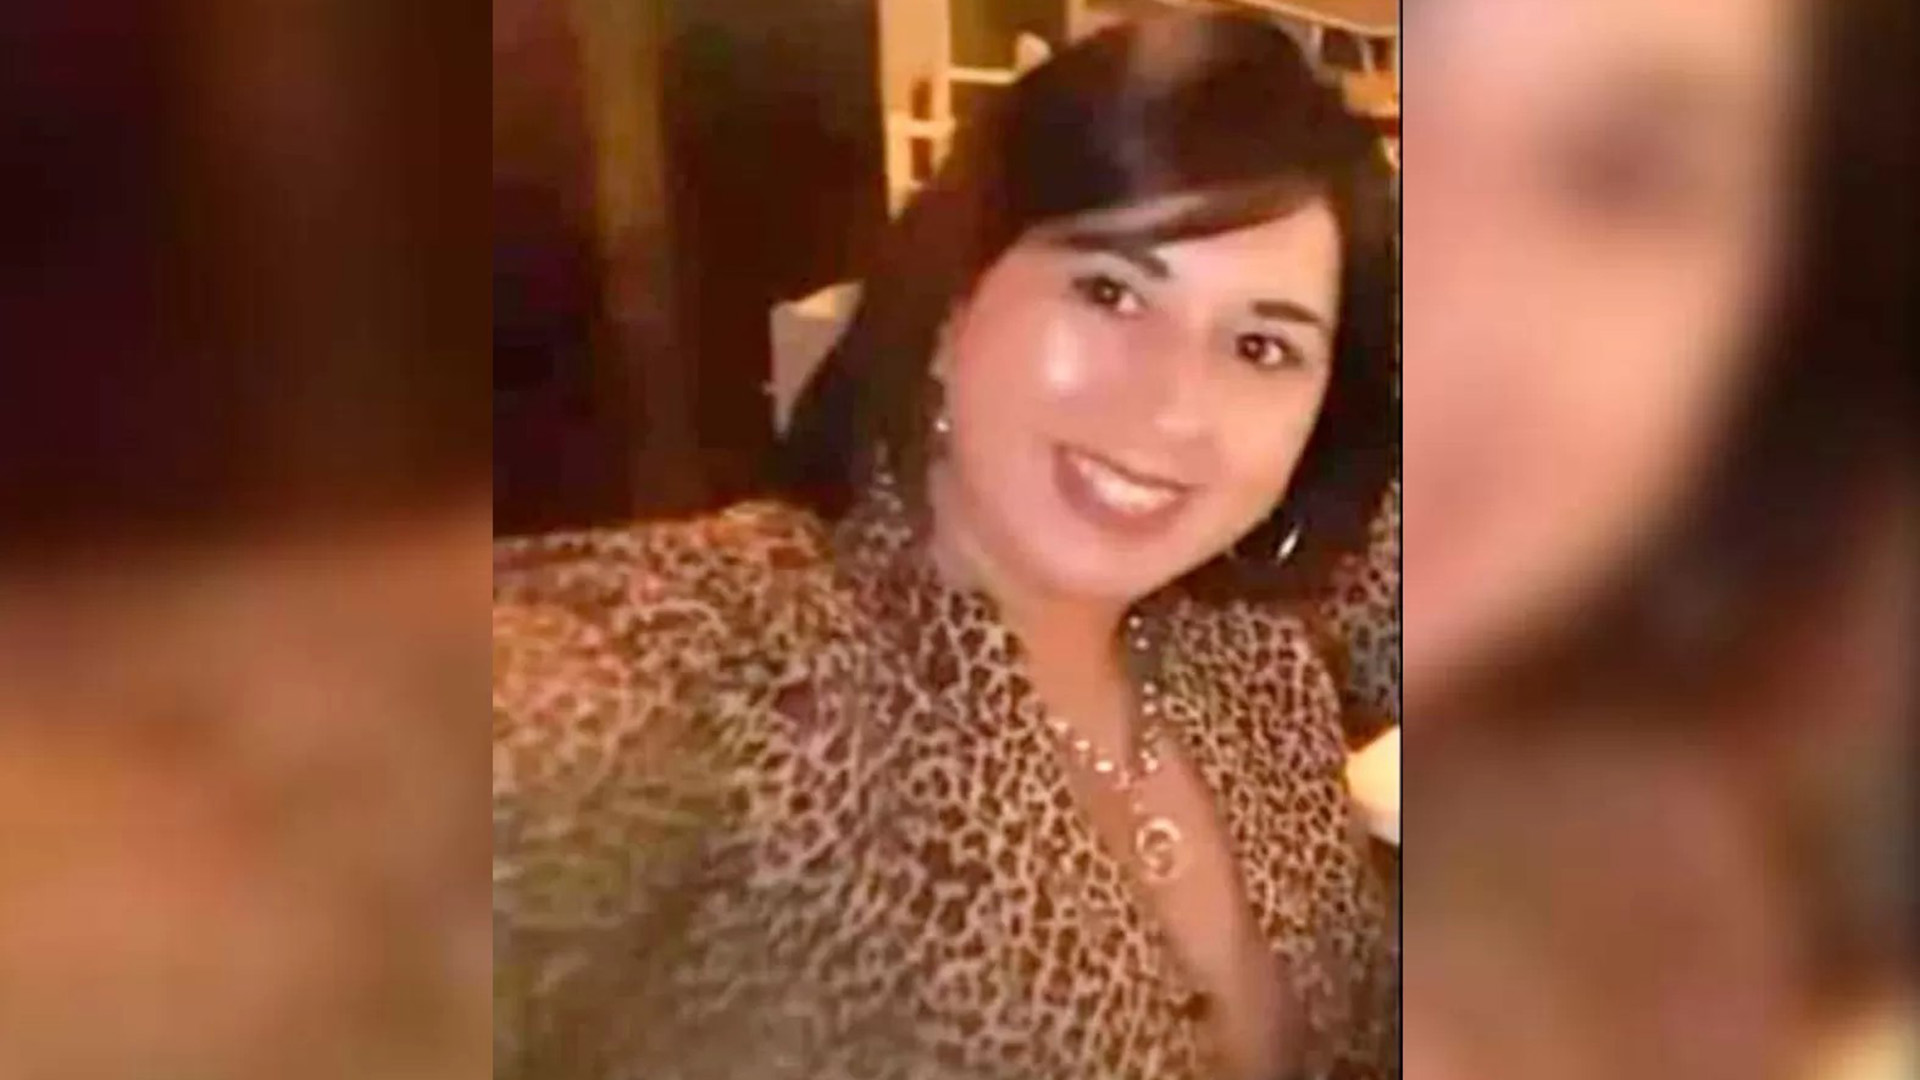 Claudia Benítez recibió amenazas antes de su homicidio